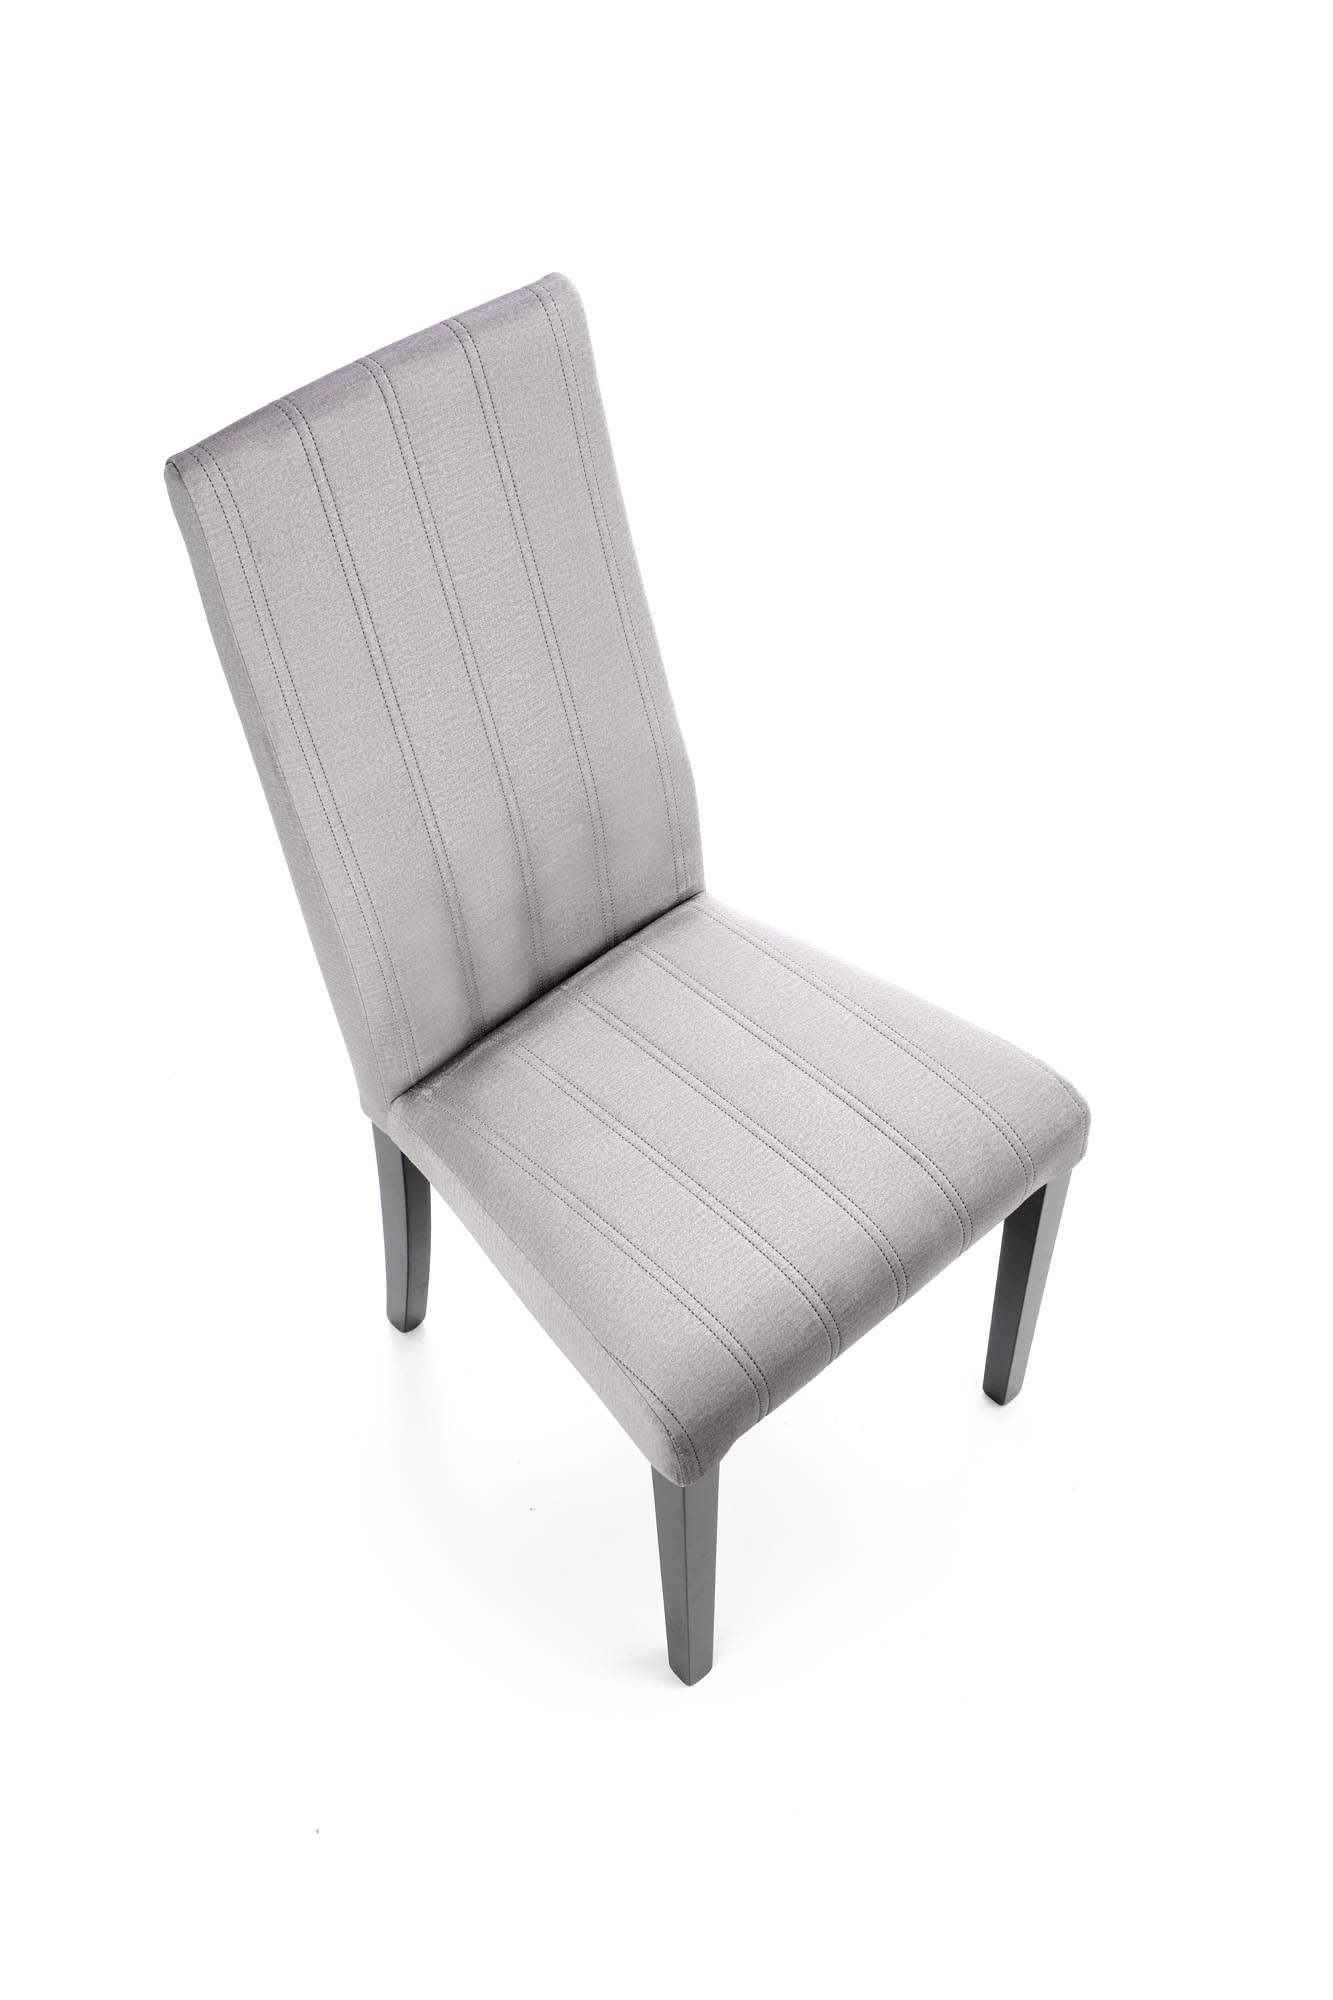 DIEGO 2 krzesło czarny / tap. velvet pikowany Pasy - MONOLITH 85 (jasny popiel) diego 2 krzesło czarny / tap. velvet pikowany pasy - monolith 85 (jasny popiel)